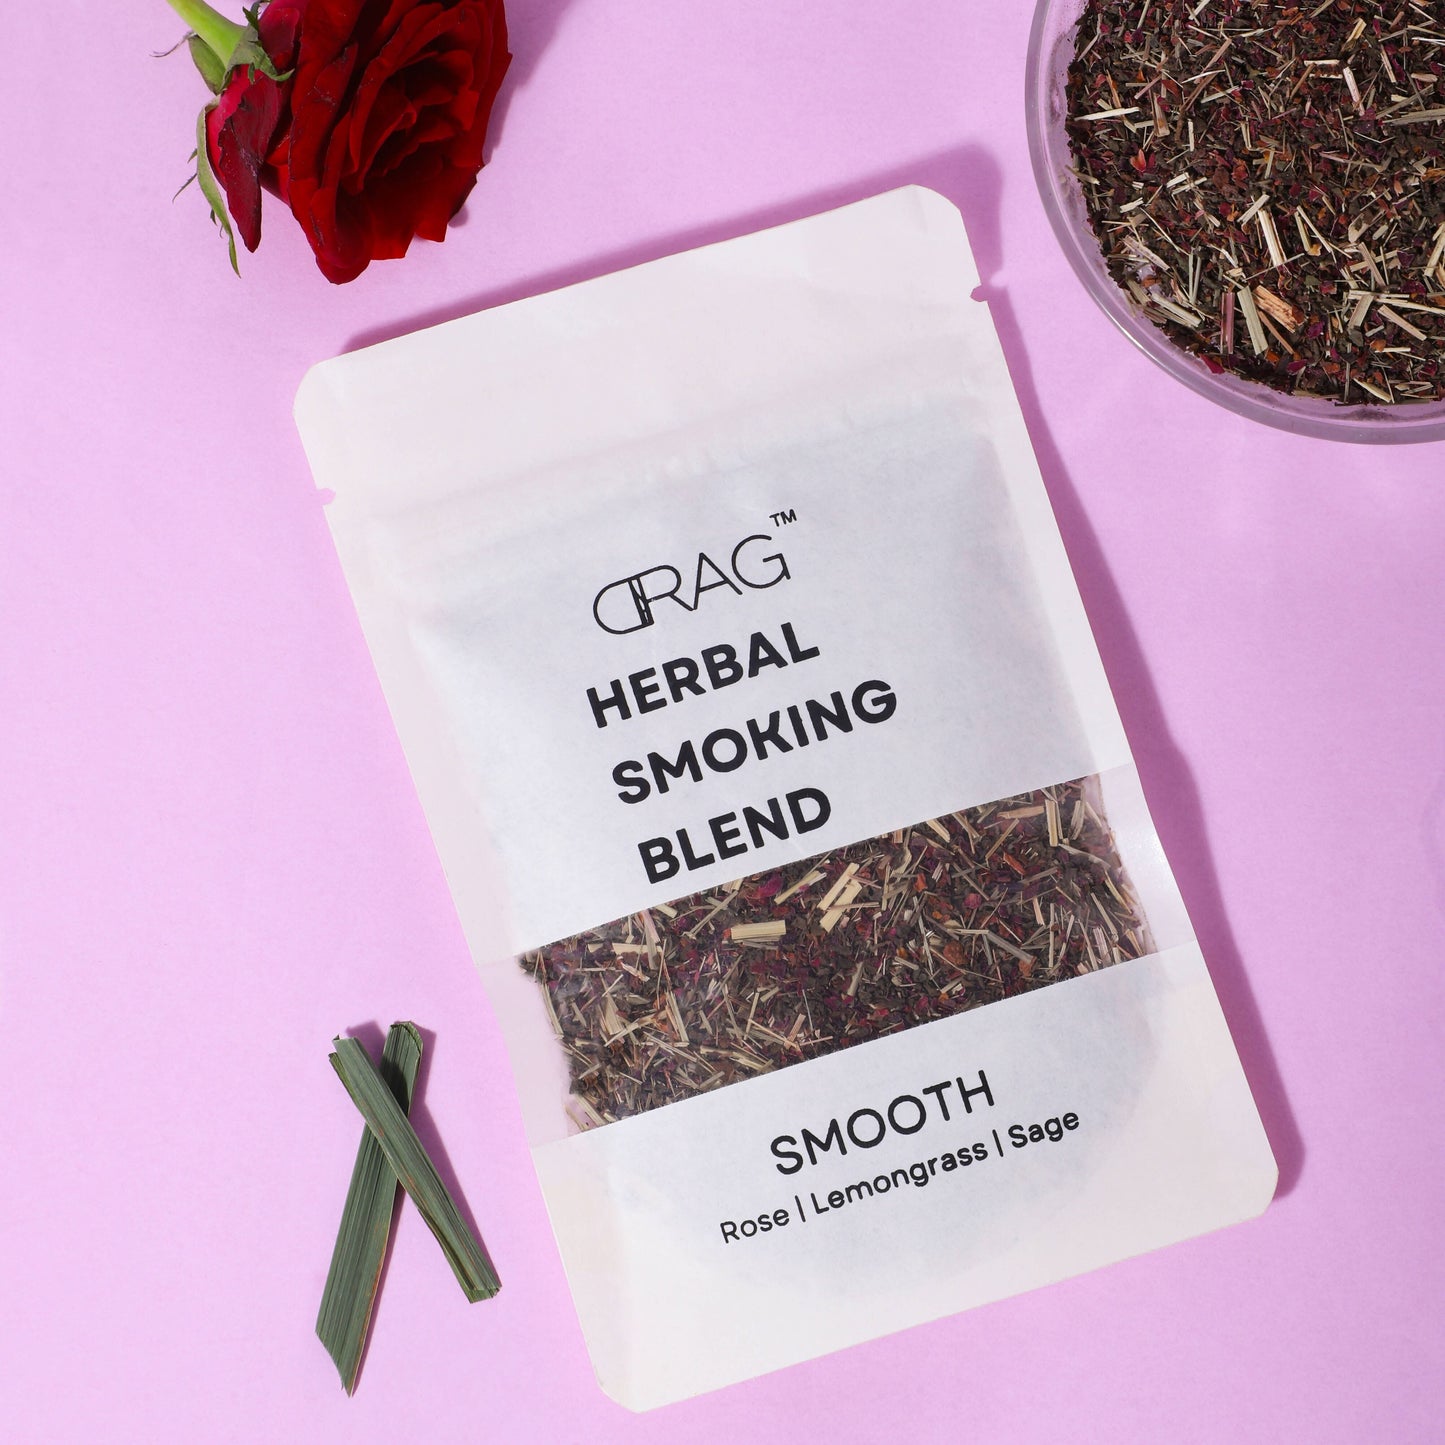 Drag - Herbal Smoking Blends (Smooth)